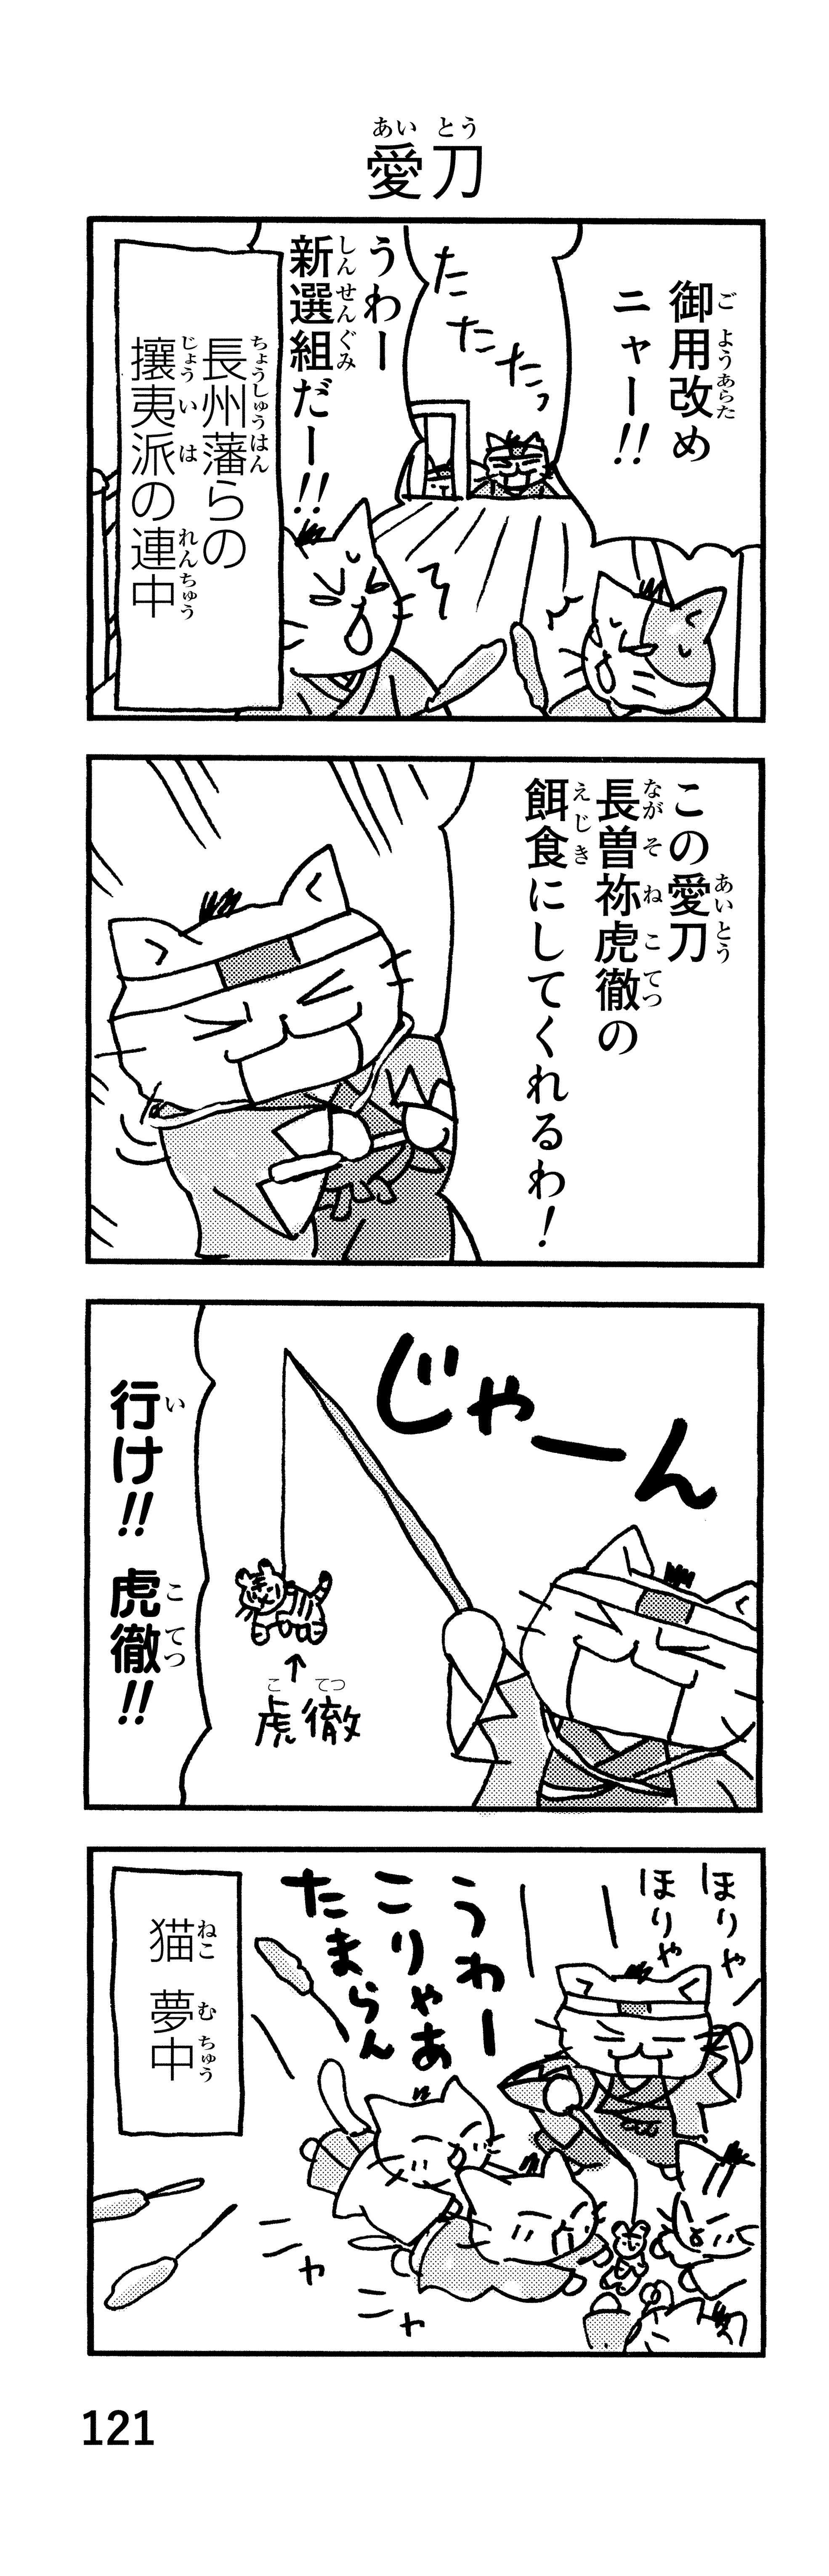 「御用改めニャー！」かわいい猫で描かれる新選組。近藤、土方、沖田が猫になると／ねこねこ日本史 p121-2.jpg